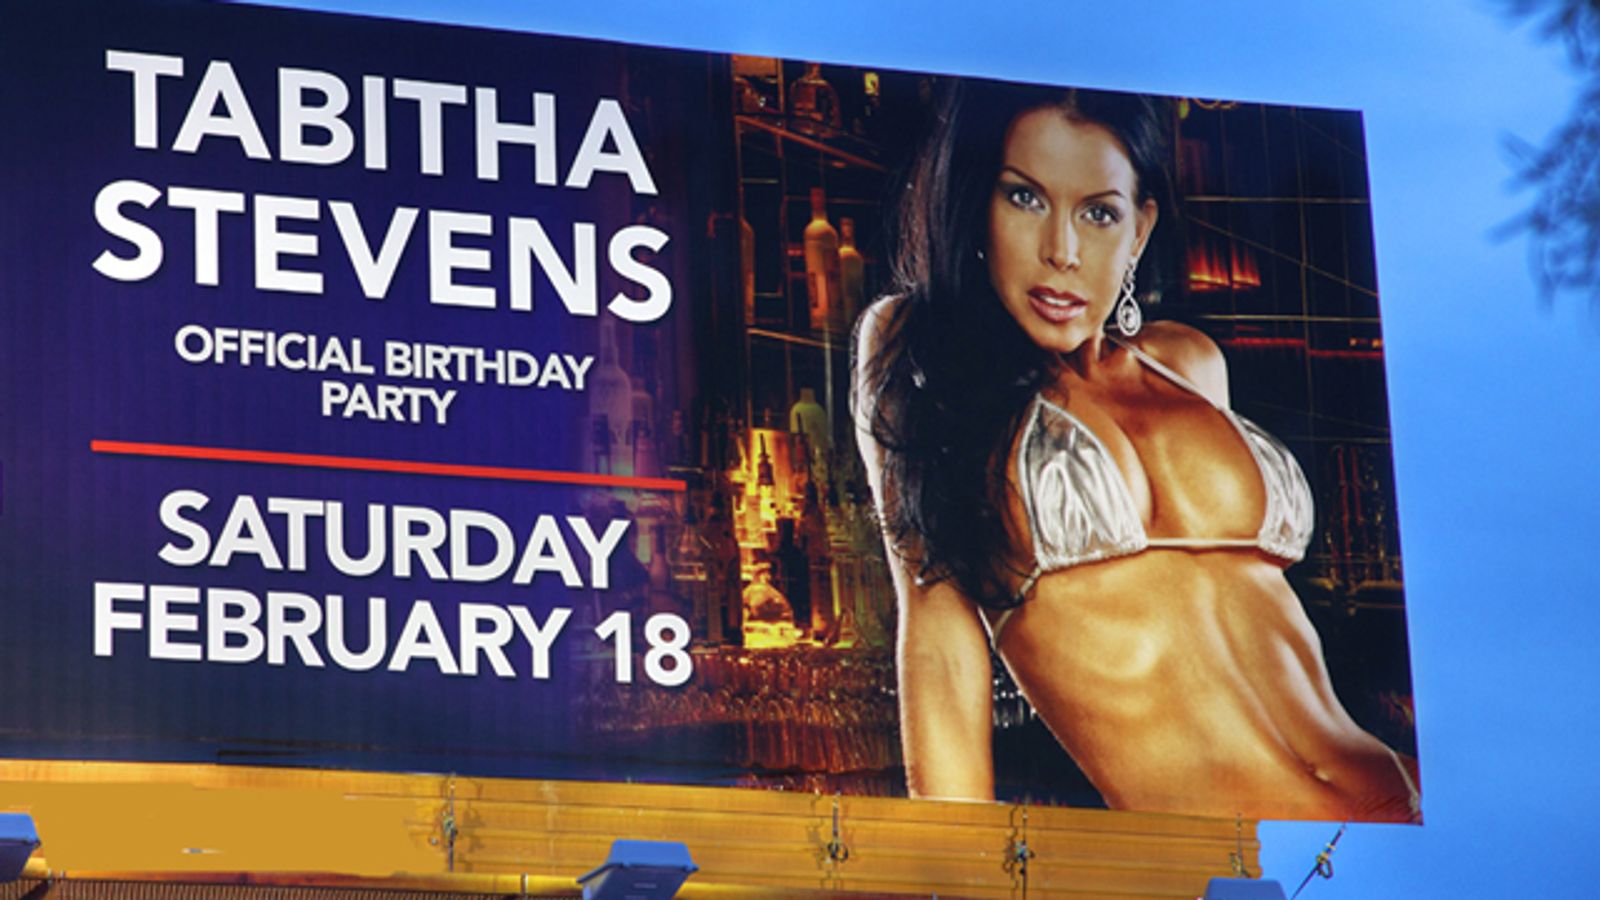 Tabitha Stevens Appears on Las Vegas Billboard